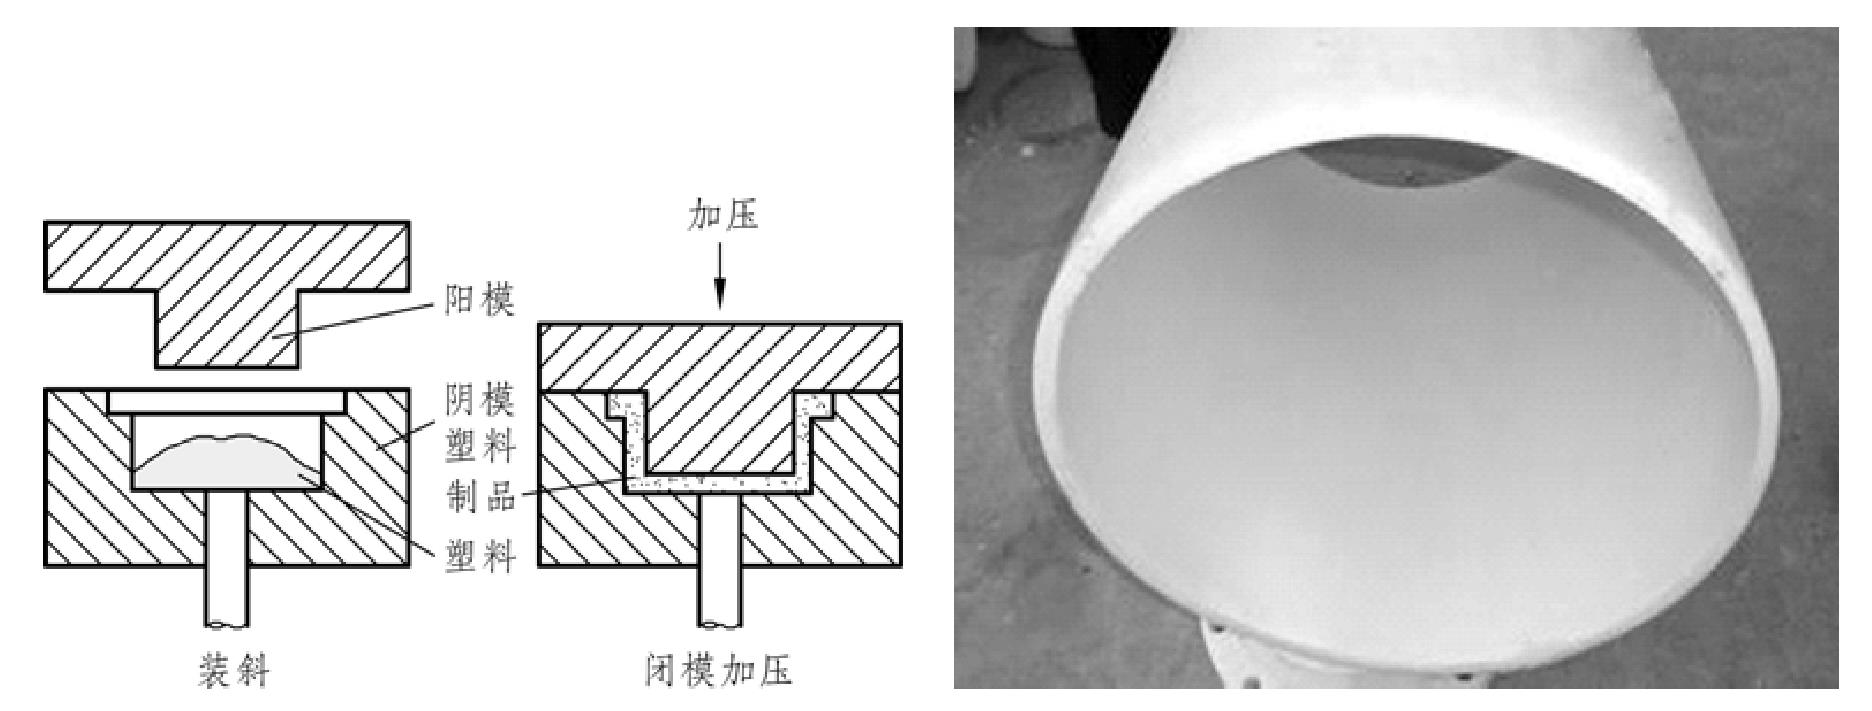 3.3.1 PE(PVC)管道管材常用市政埋地塑料管的管材